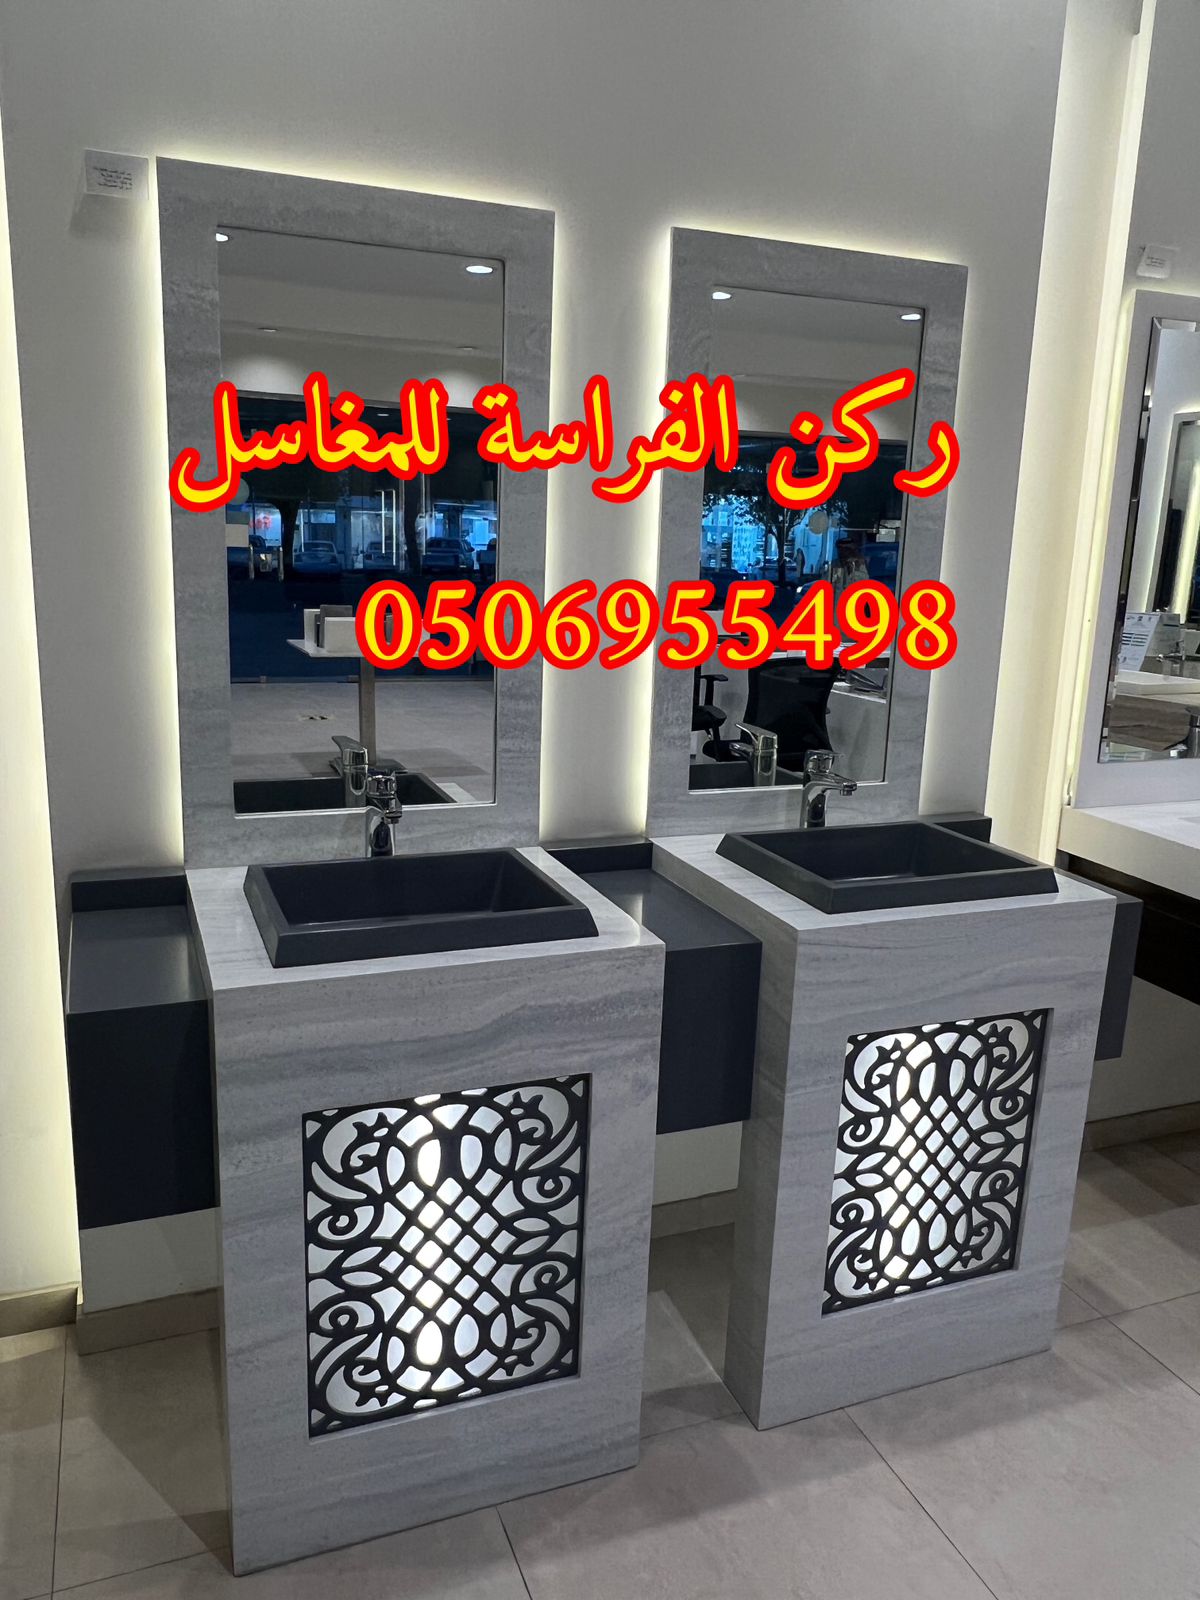 احواض مغاسل رخام في الرياض,0506955498